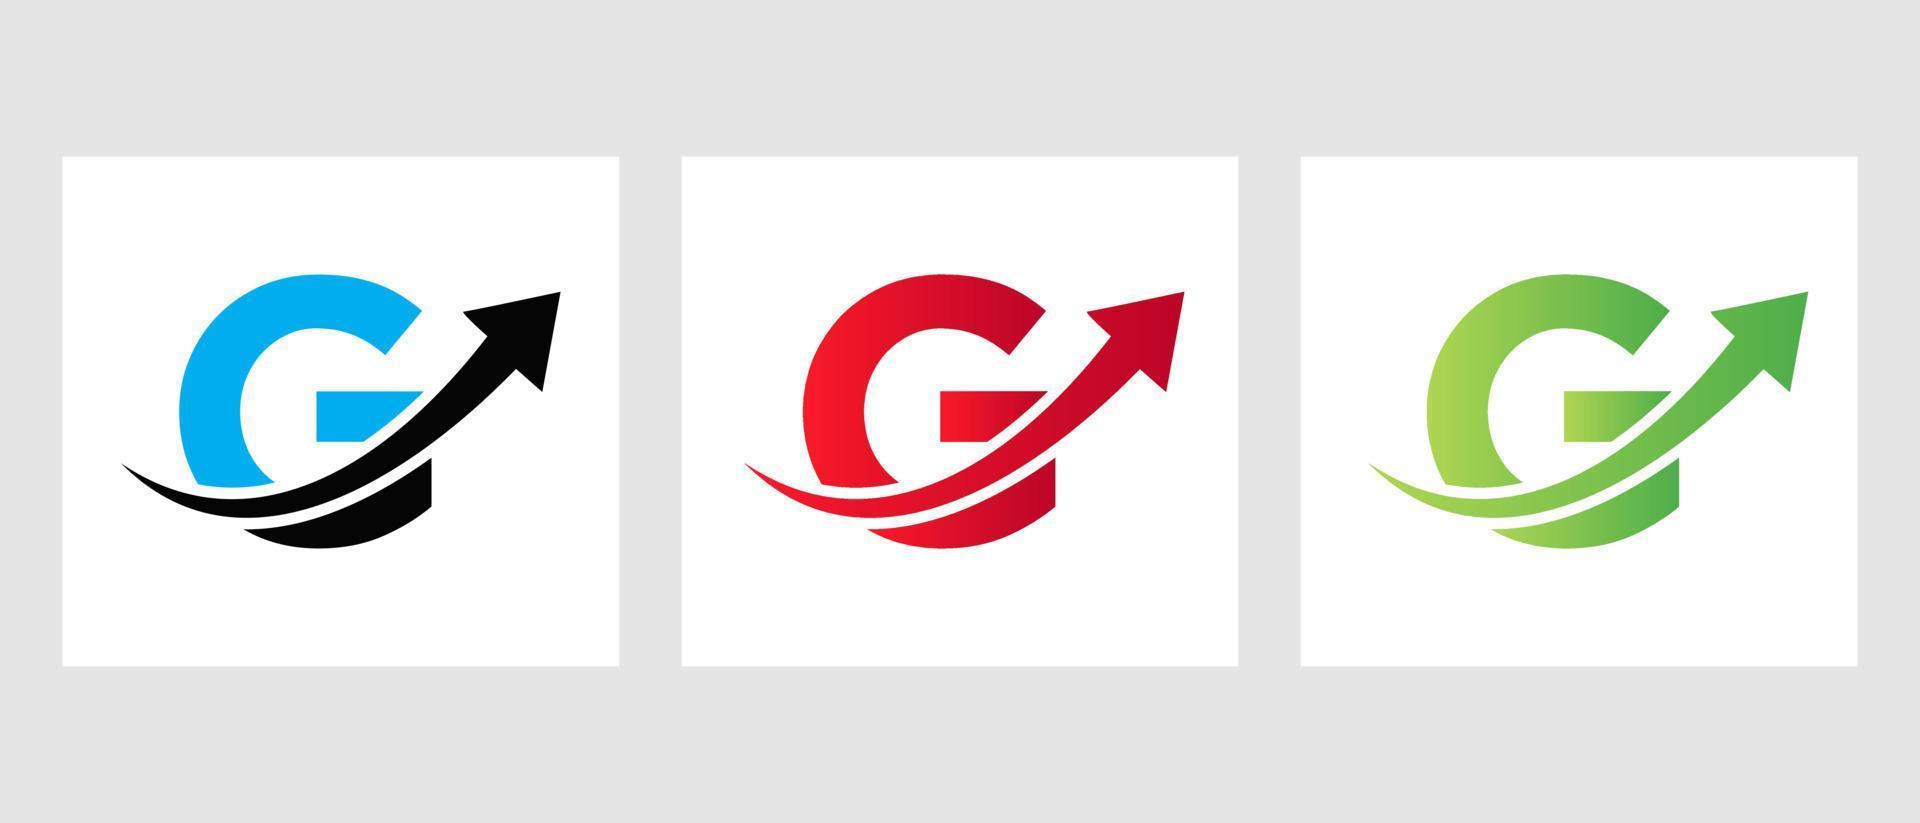 brief g financiën logo concept met groei pijl symbool vector